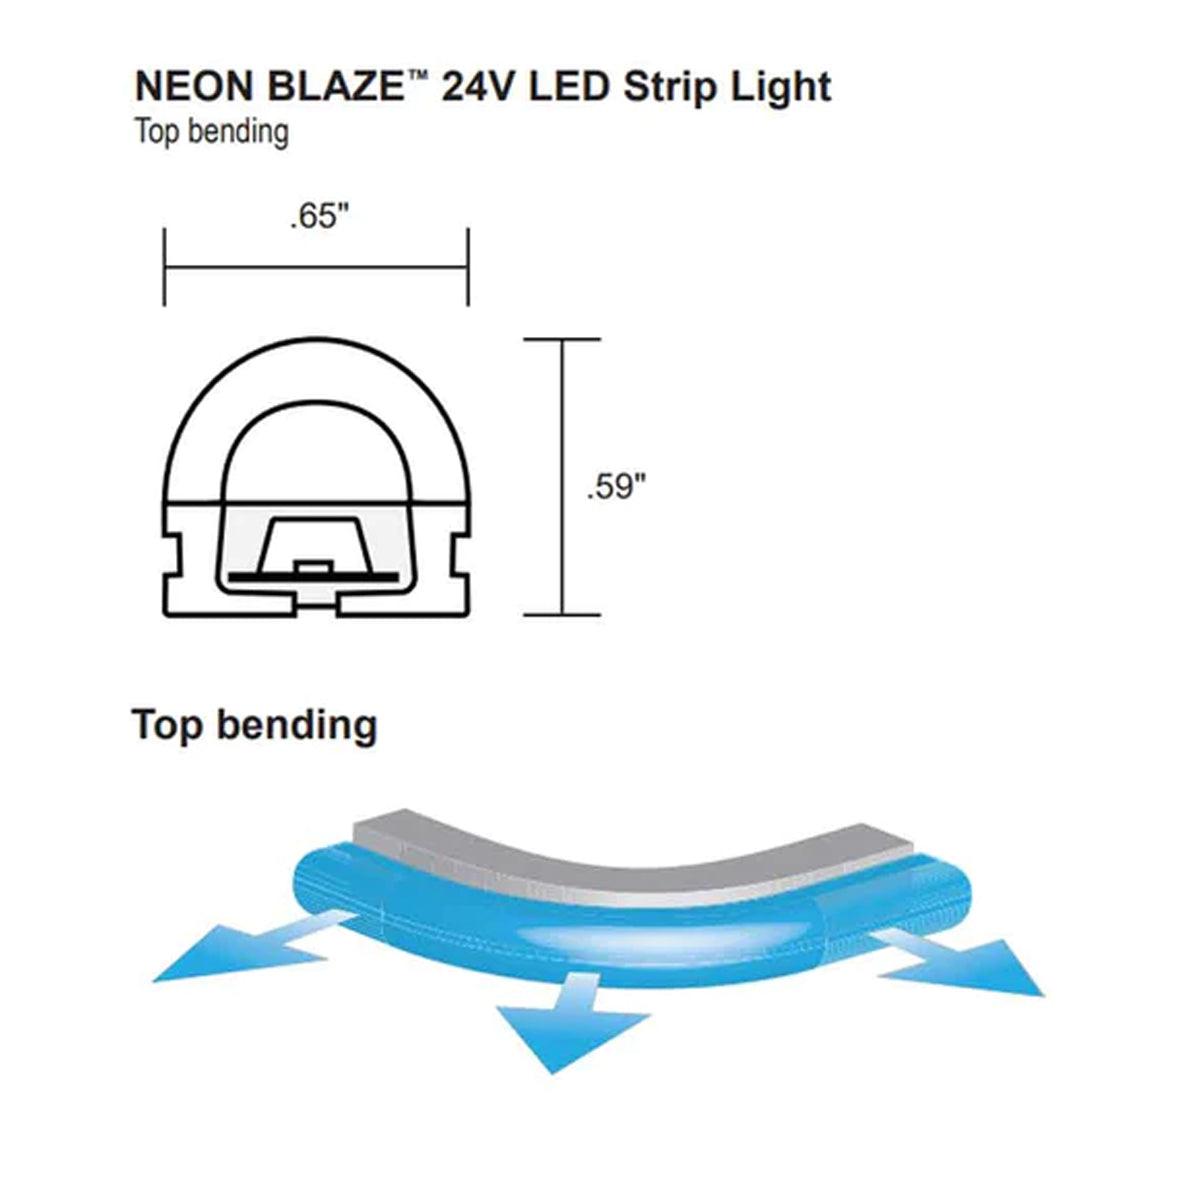 Neon BLAZE LED Neon Strip Light, Red, 24V, Top Bending